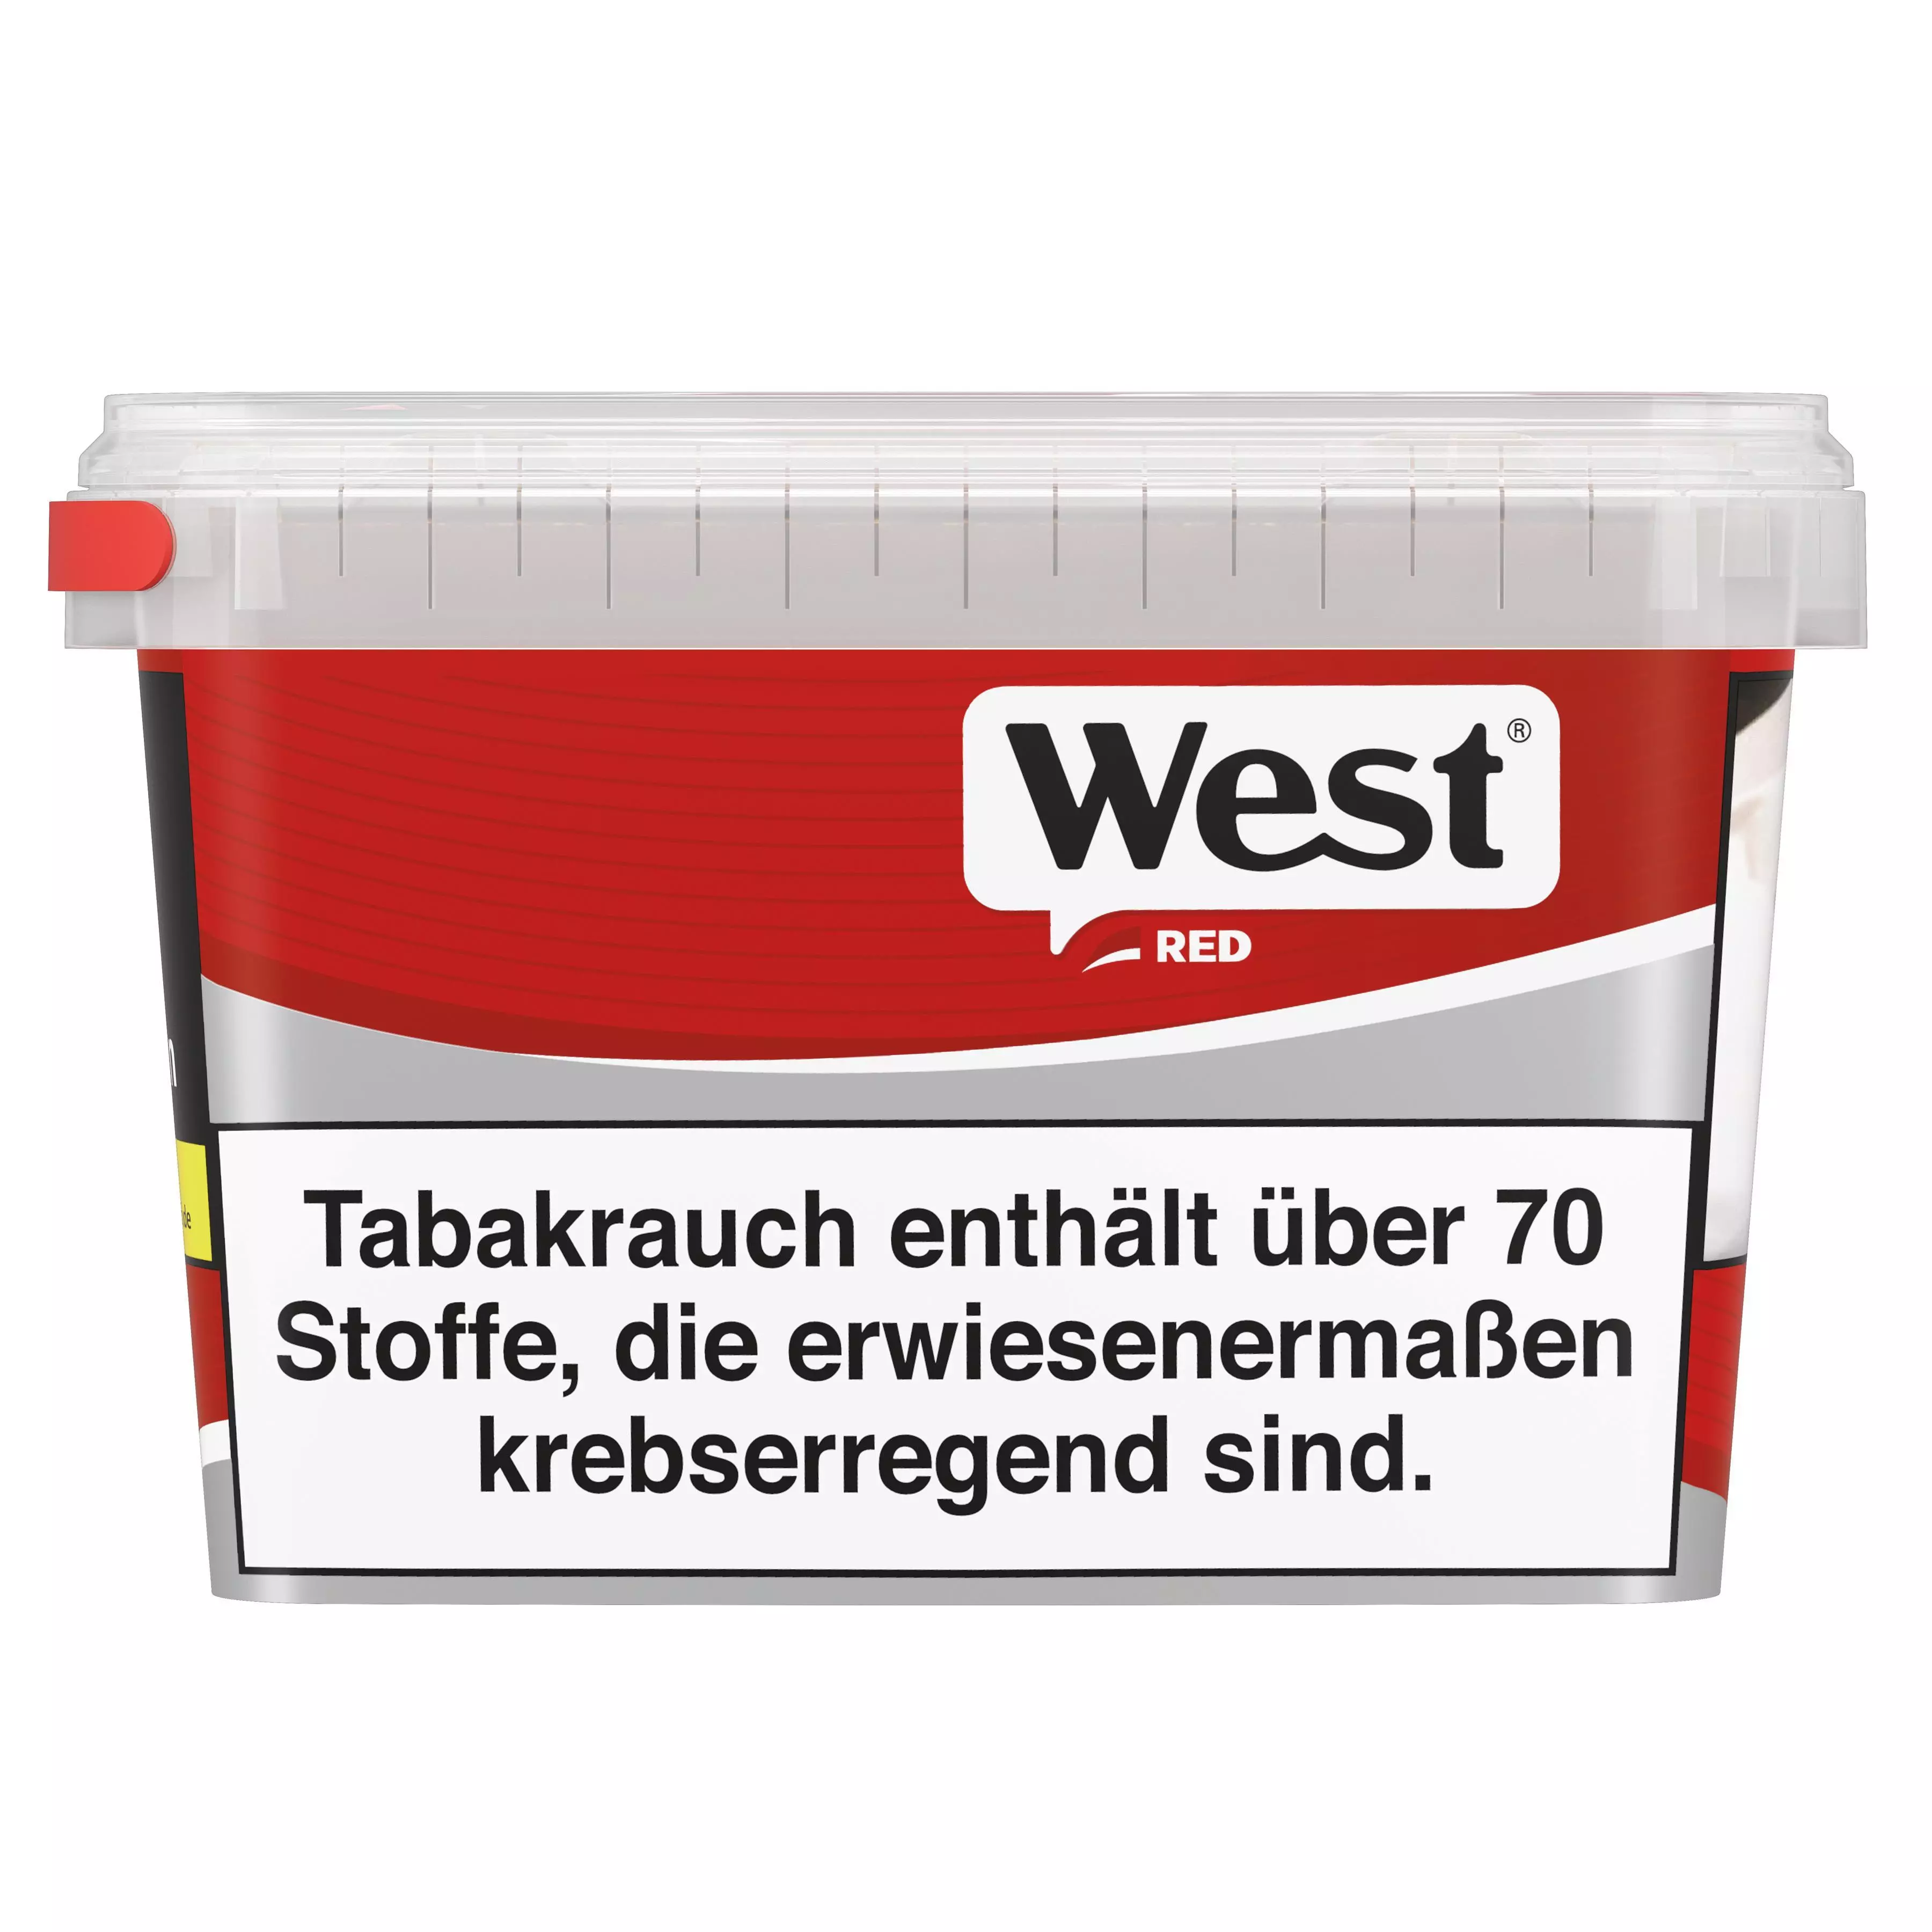 West Red Volumen Box 1 x 220g Tabak